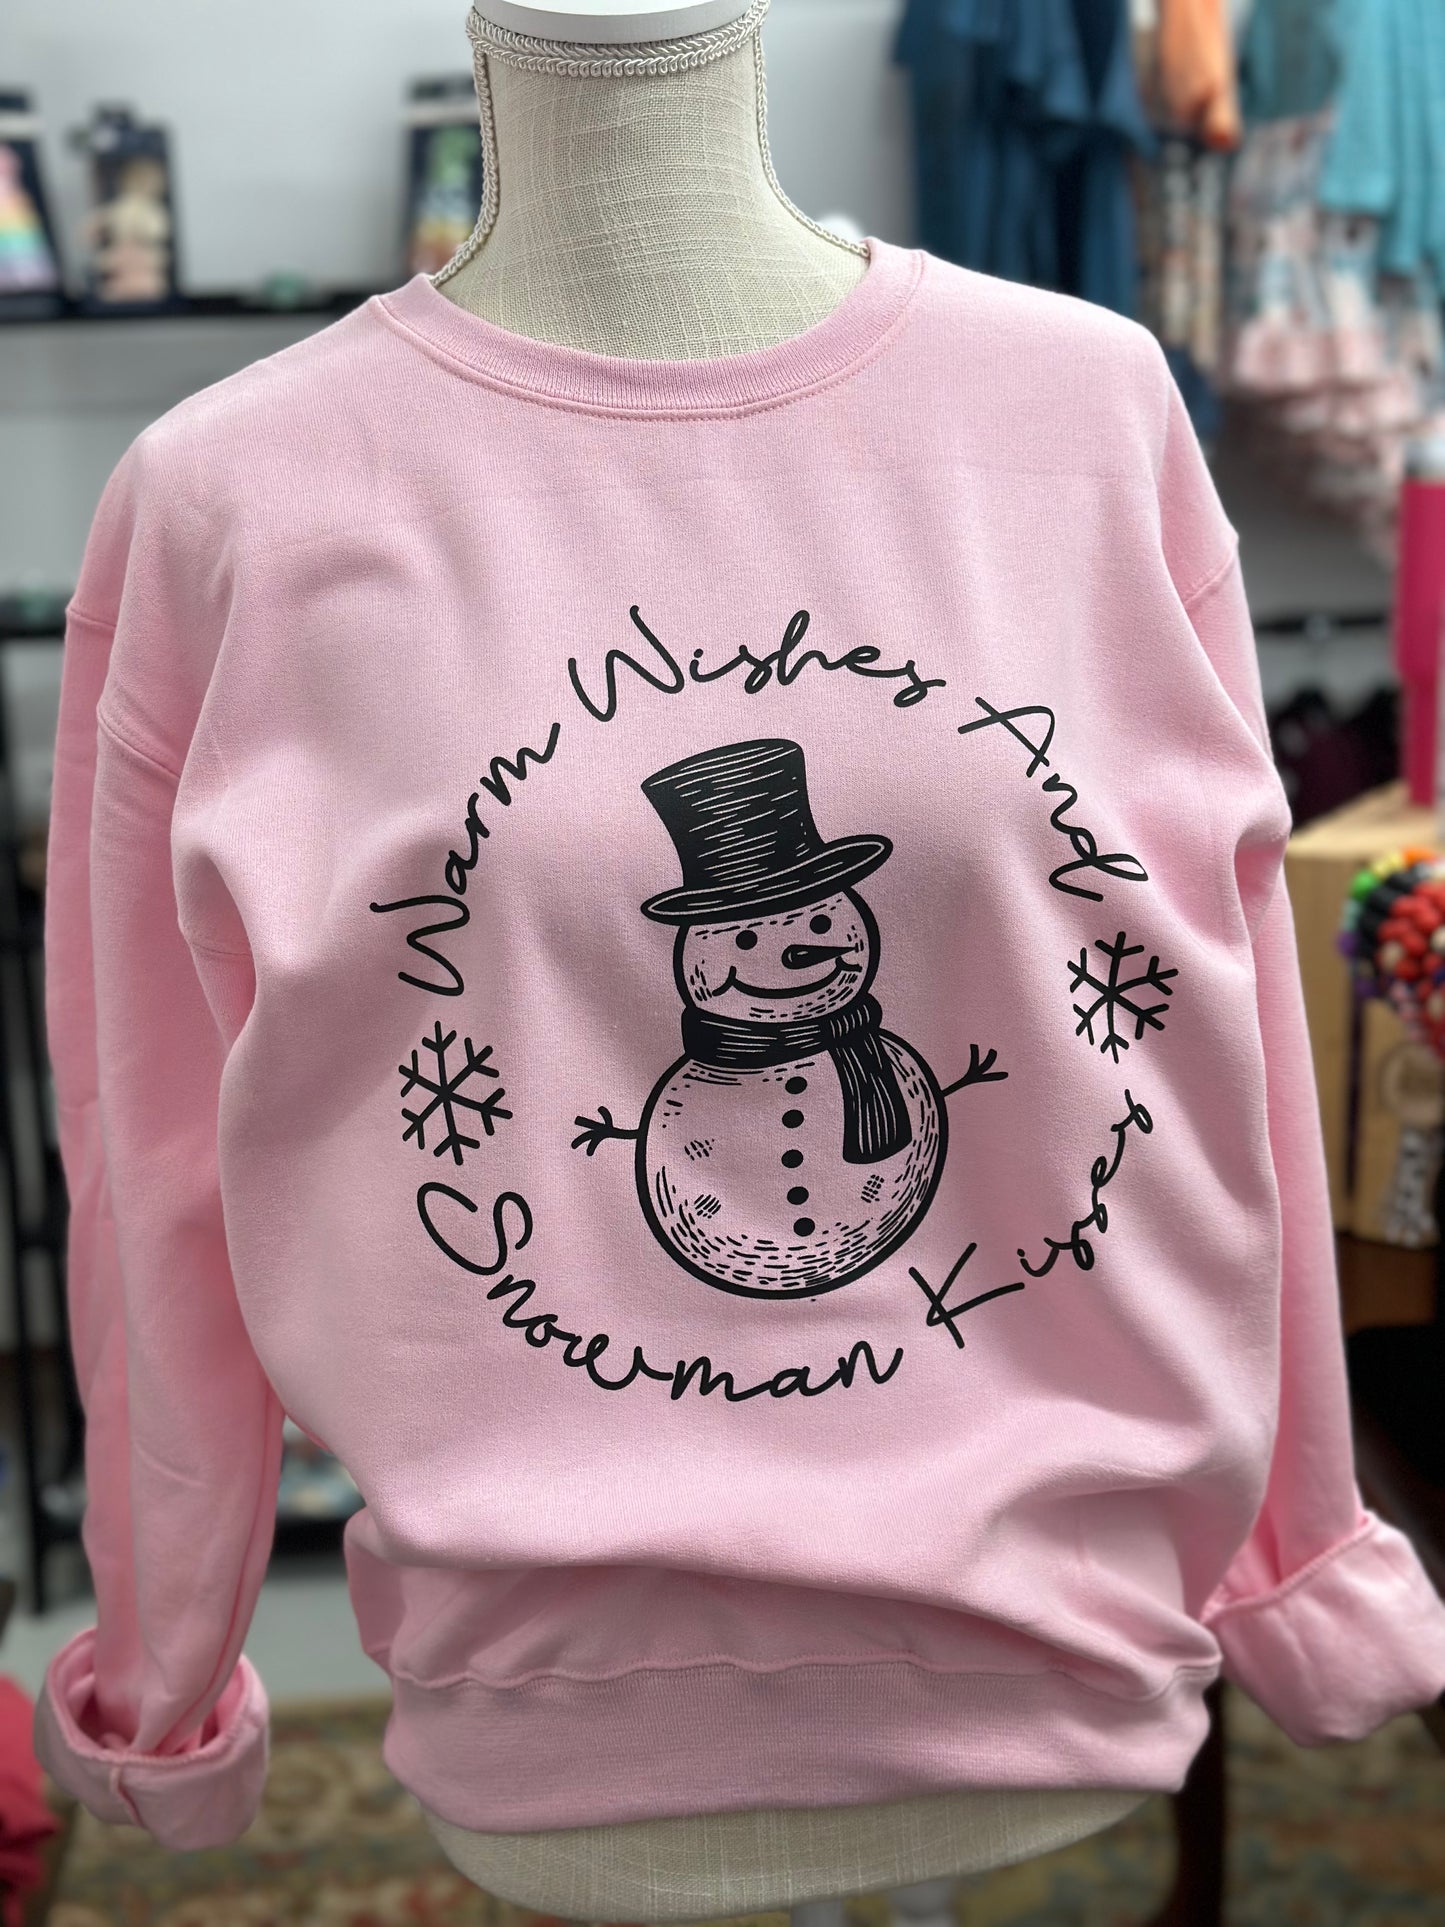 Warm wishes and Snowman kisses Crewneck Sweatshirt